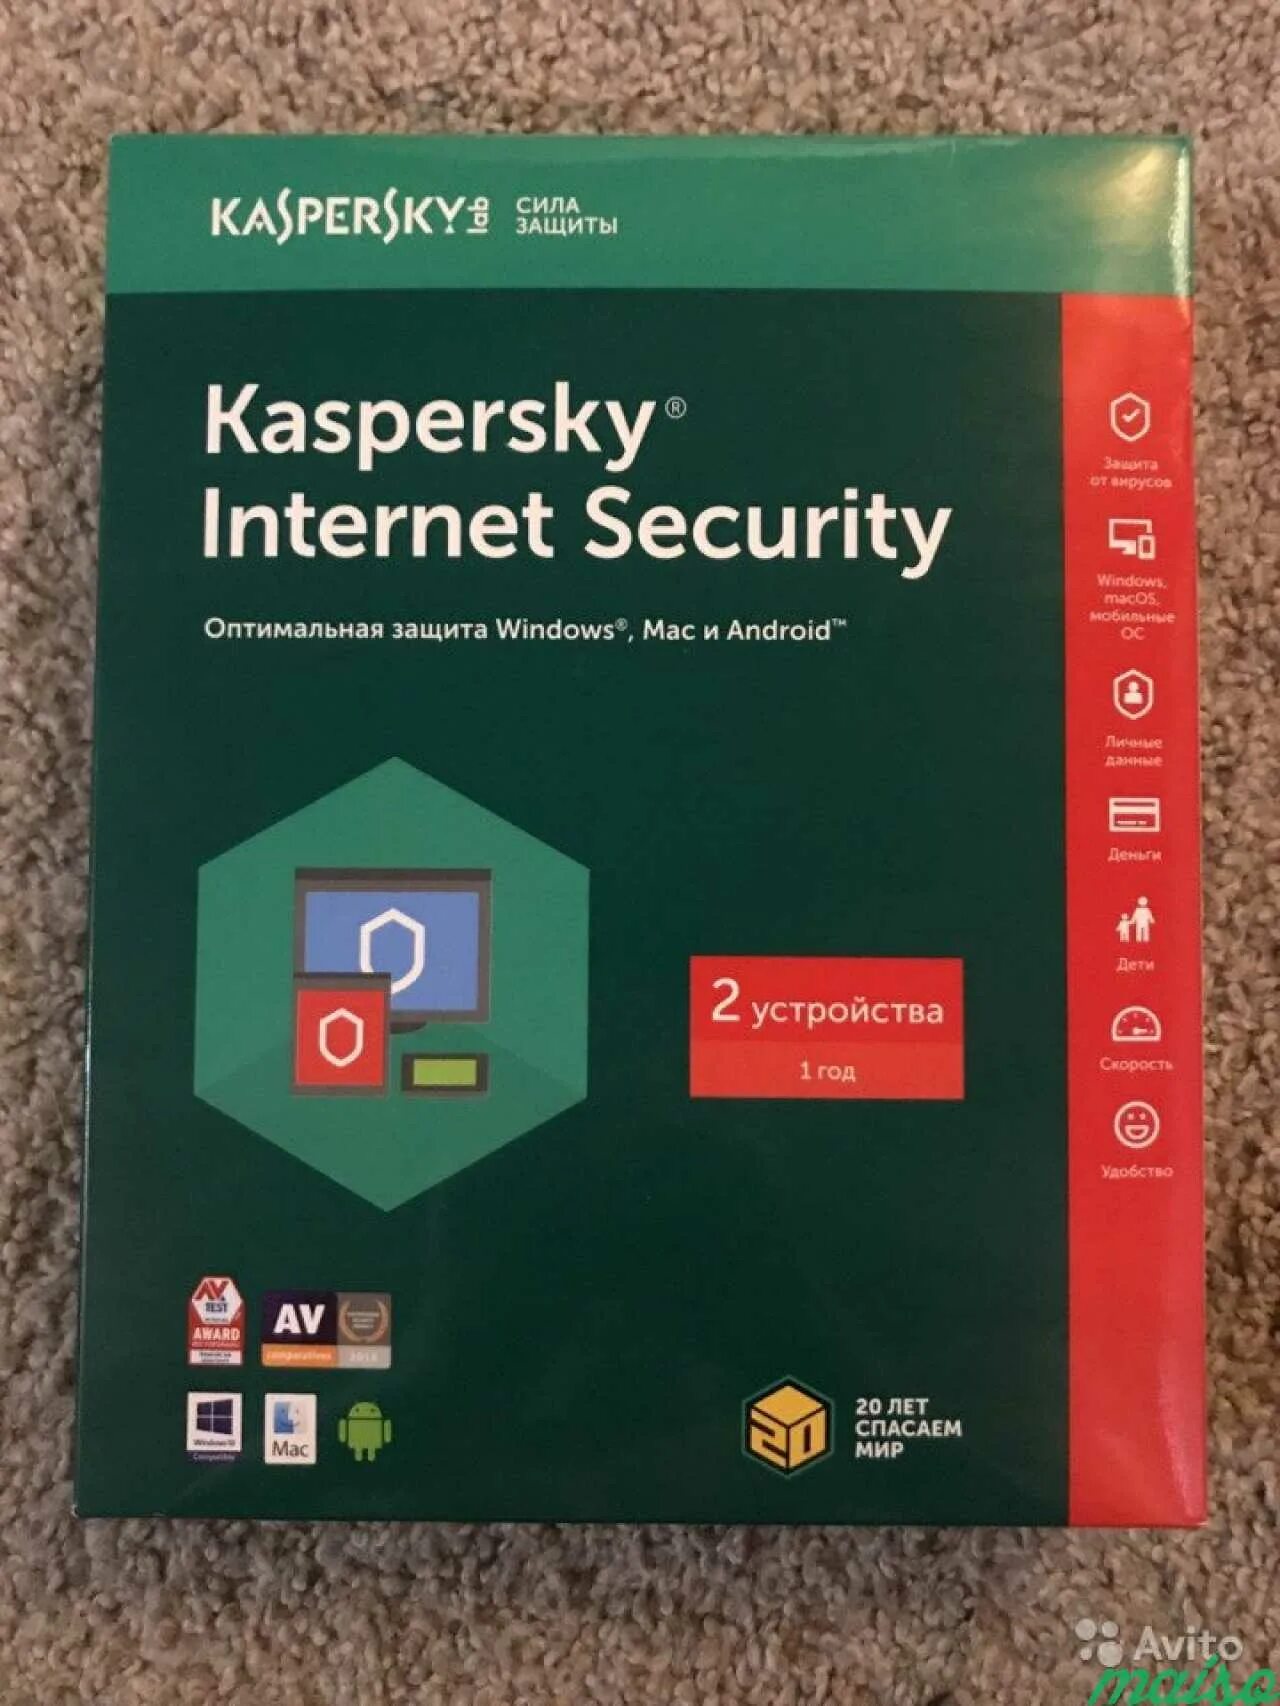 Купить касперский антивирус на 3. Kaspersky Internet Security. Купить Касперский антивирус Саранск.